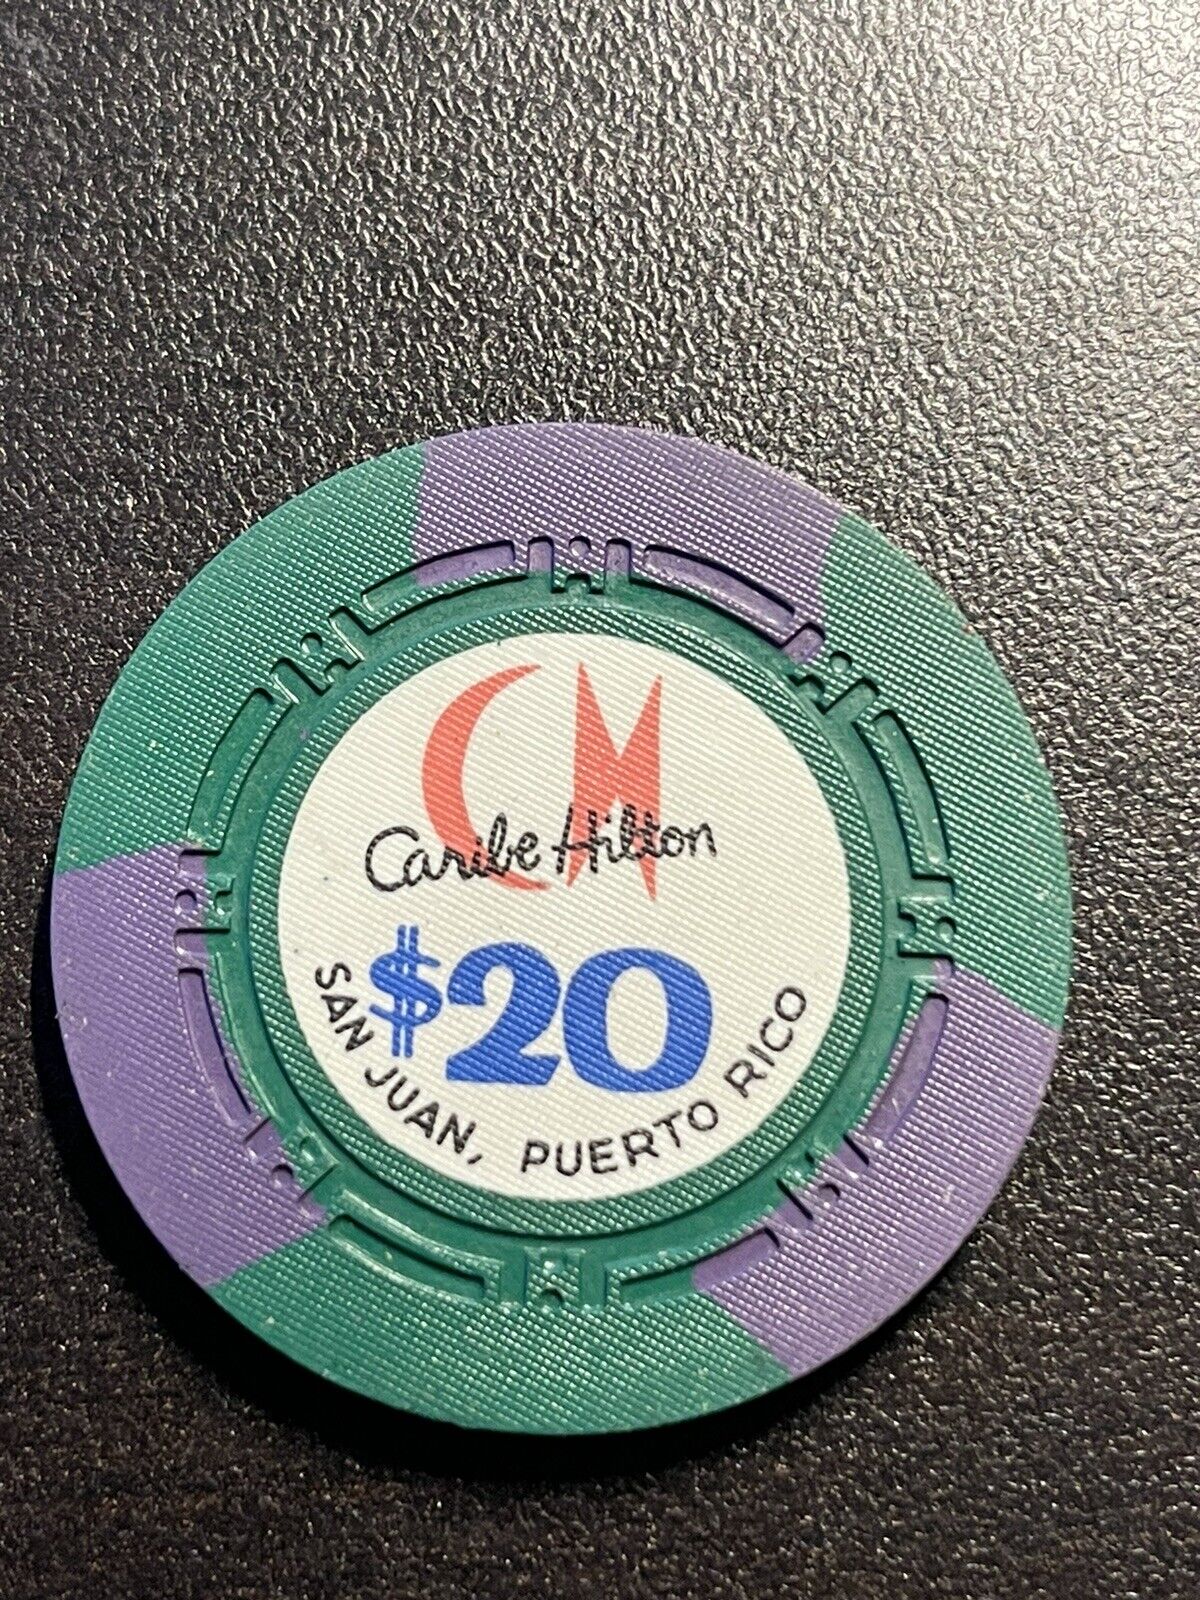 $20 Caribe Hilton San Juan Puerto Rico Casino Chip **Rare** Dark Purple Marks